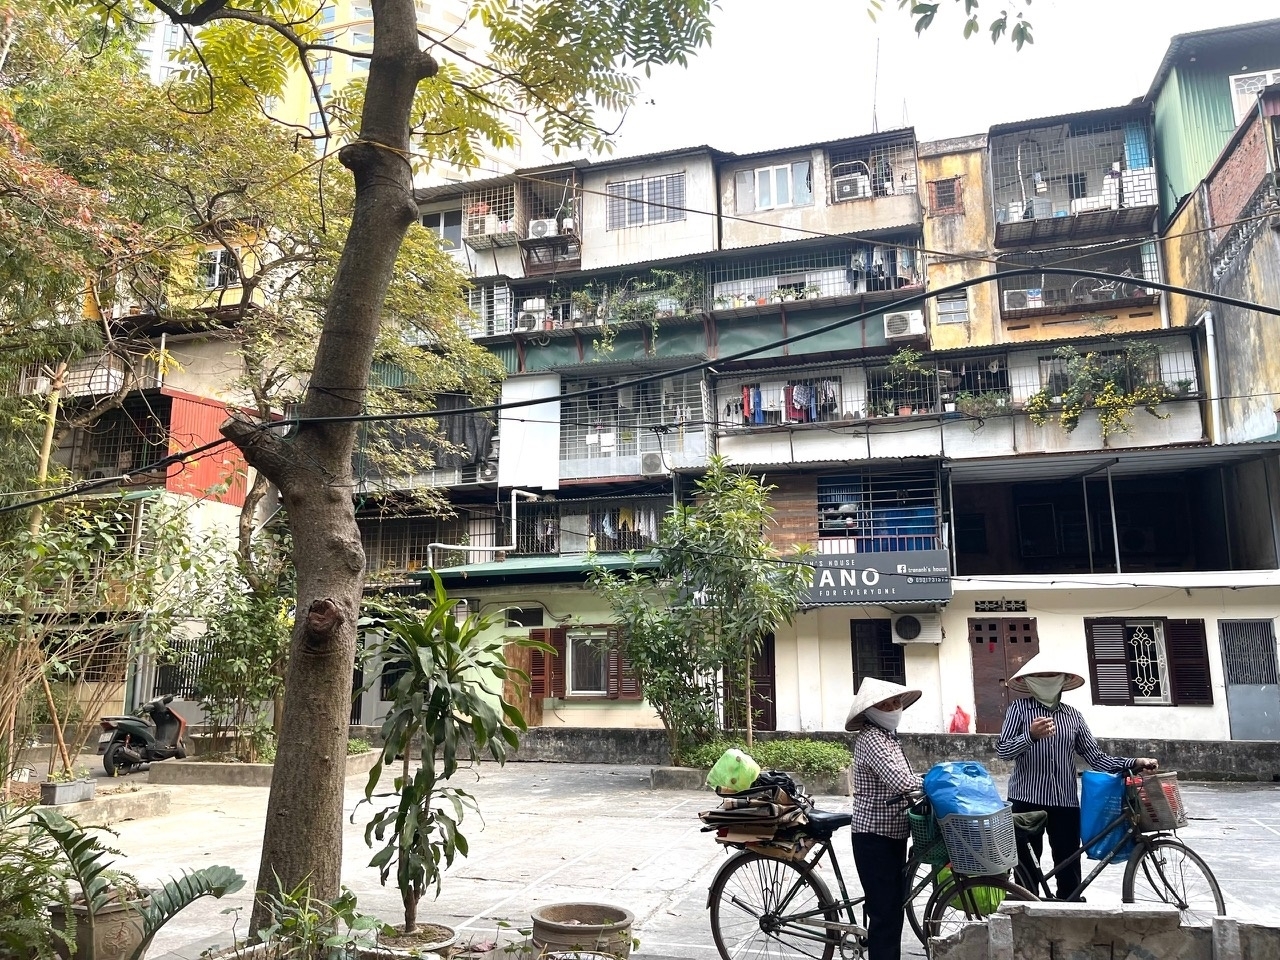 Thời gian phá dỡ các nhà chung cư cũ ở Hà Nội